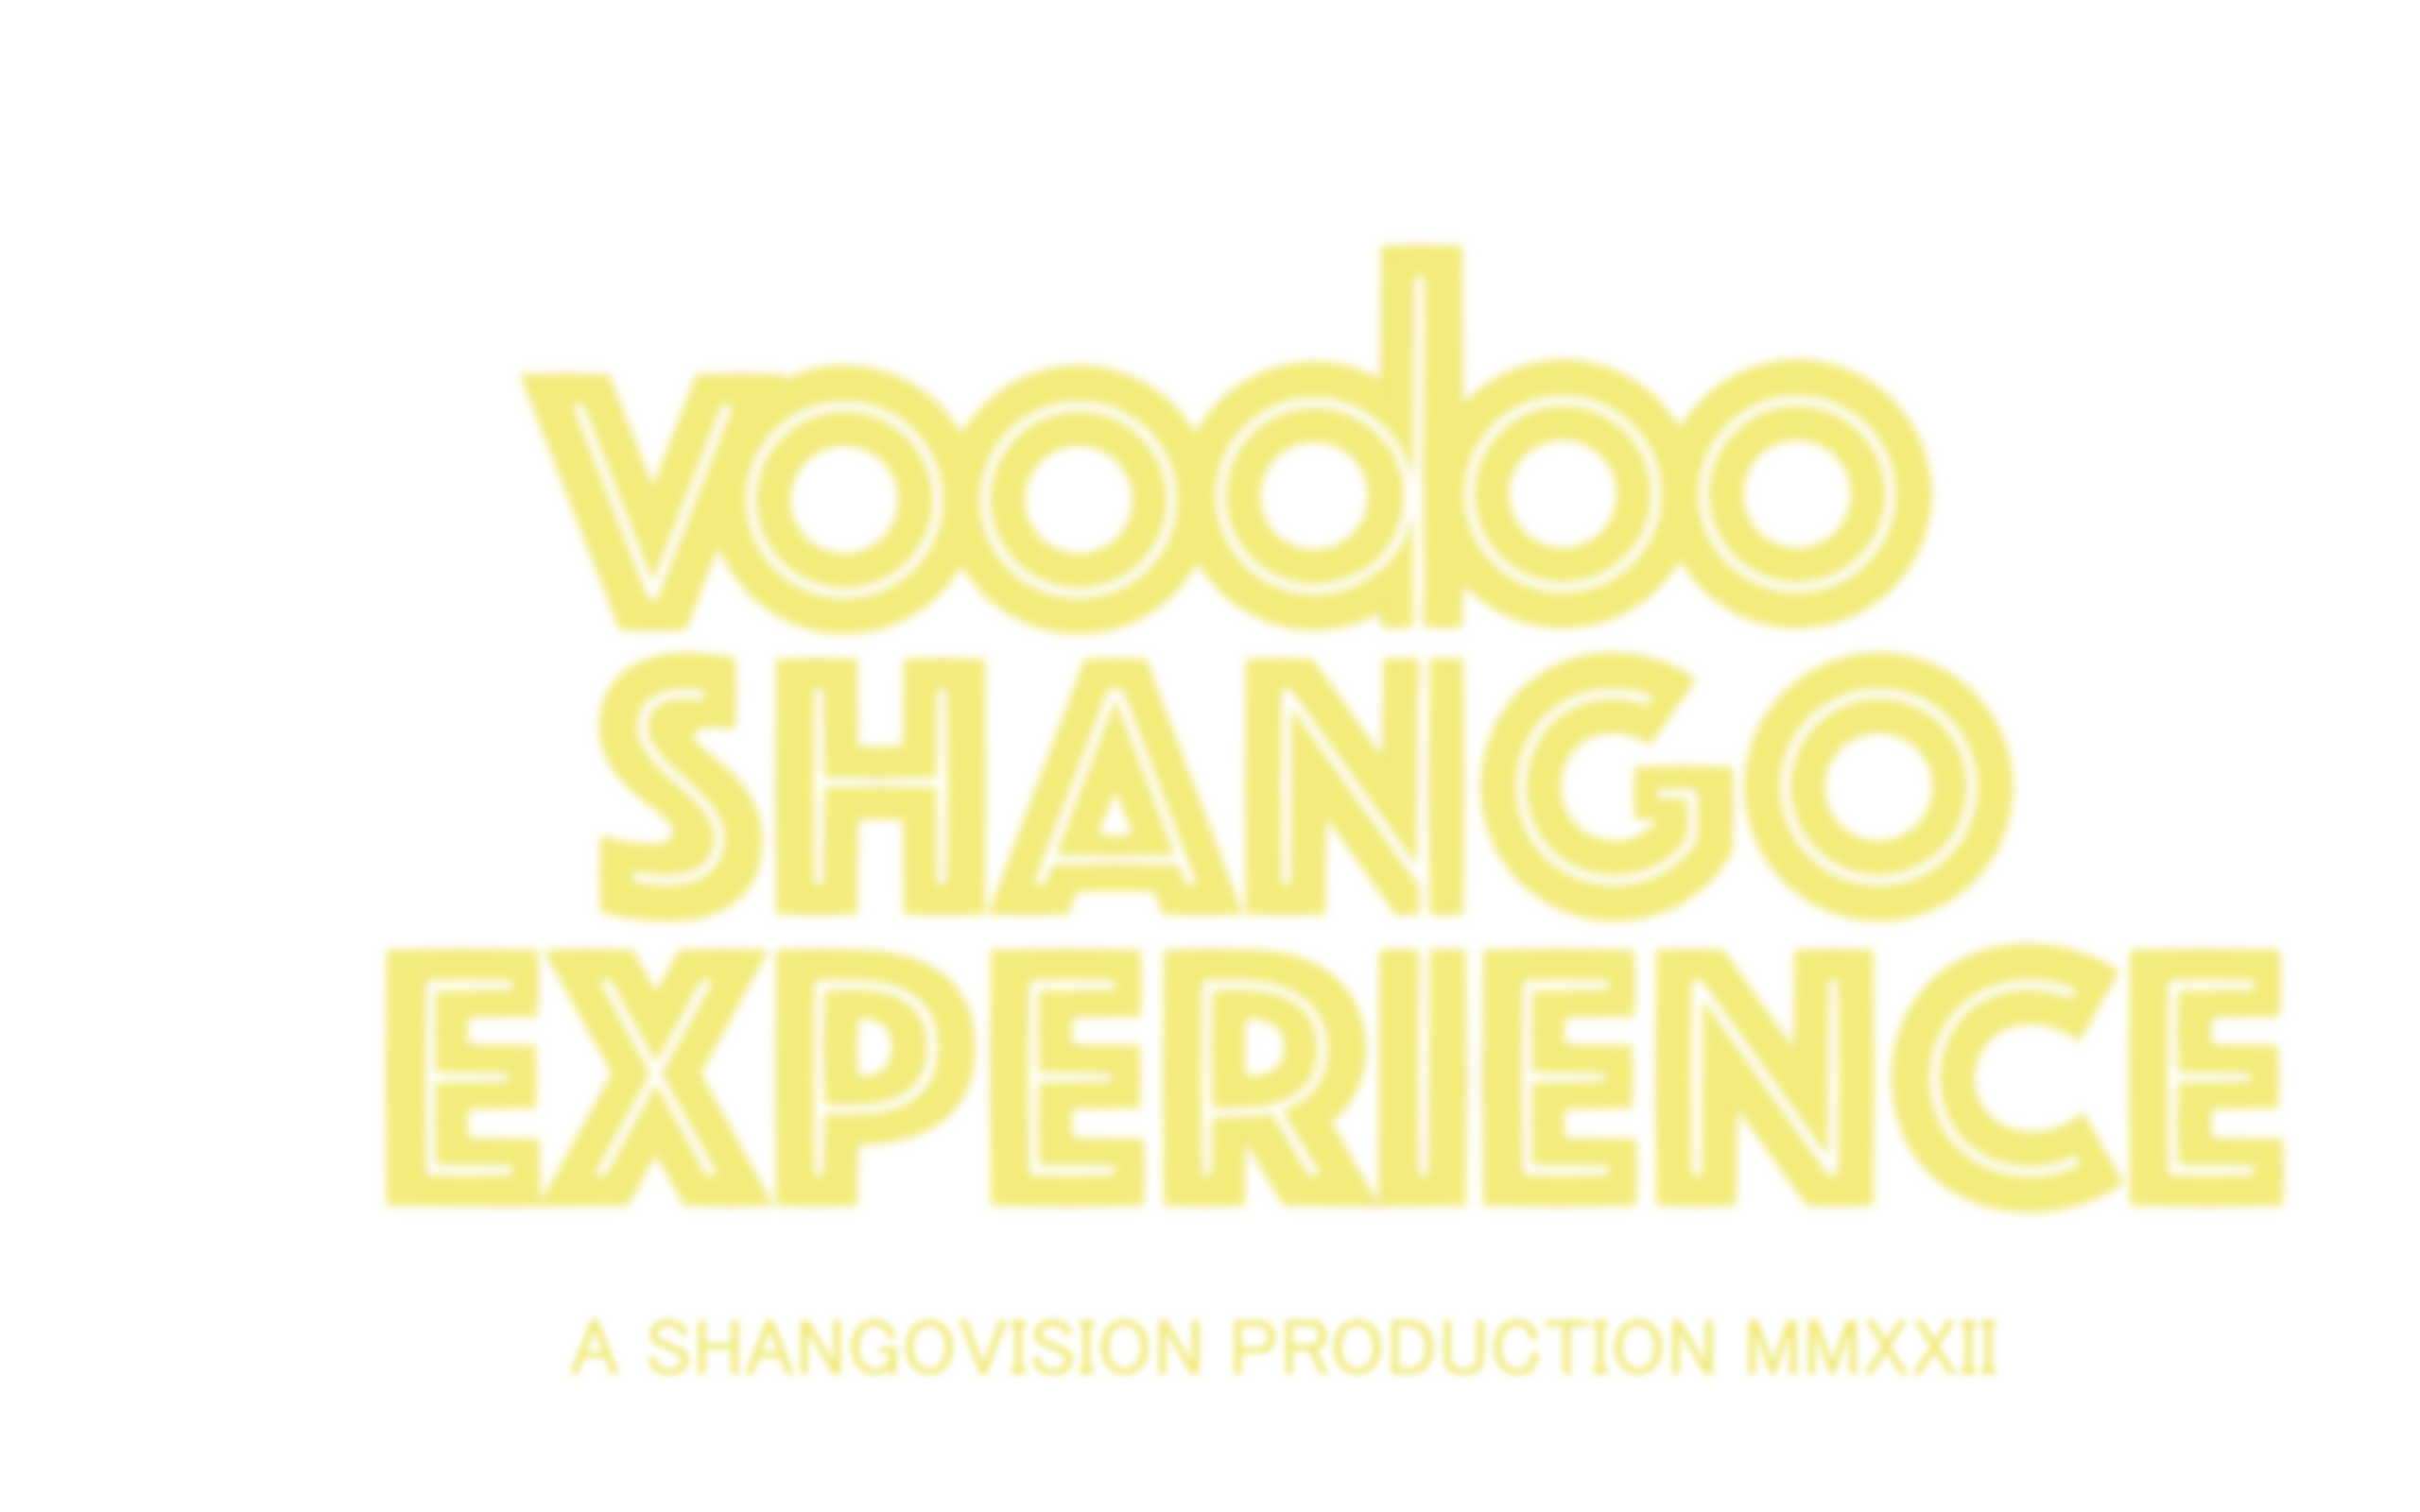 Voodoo Shango Experience